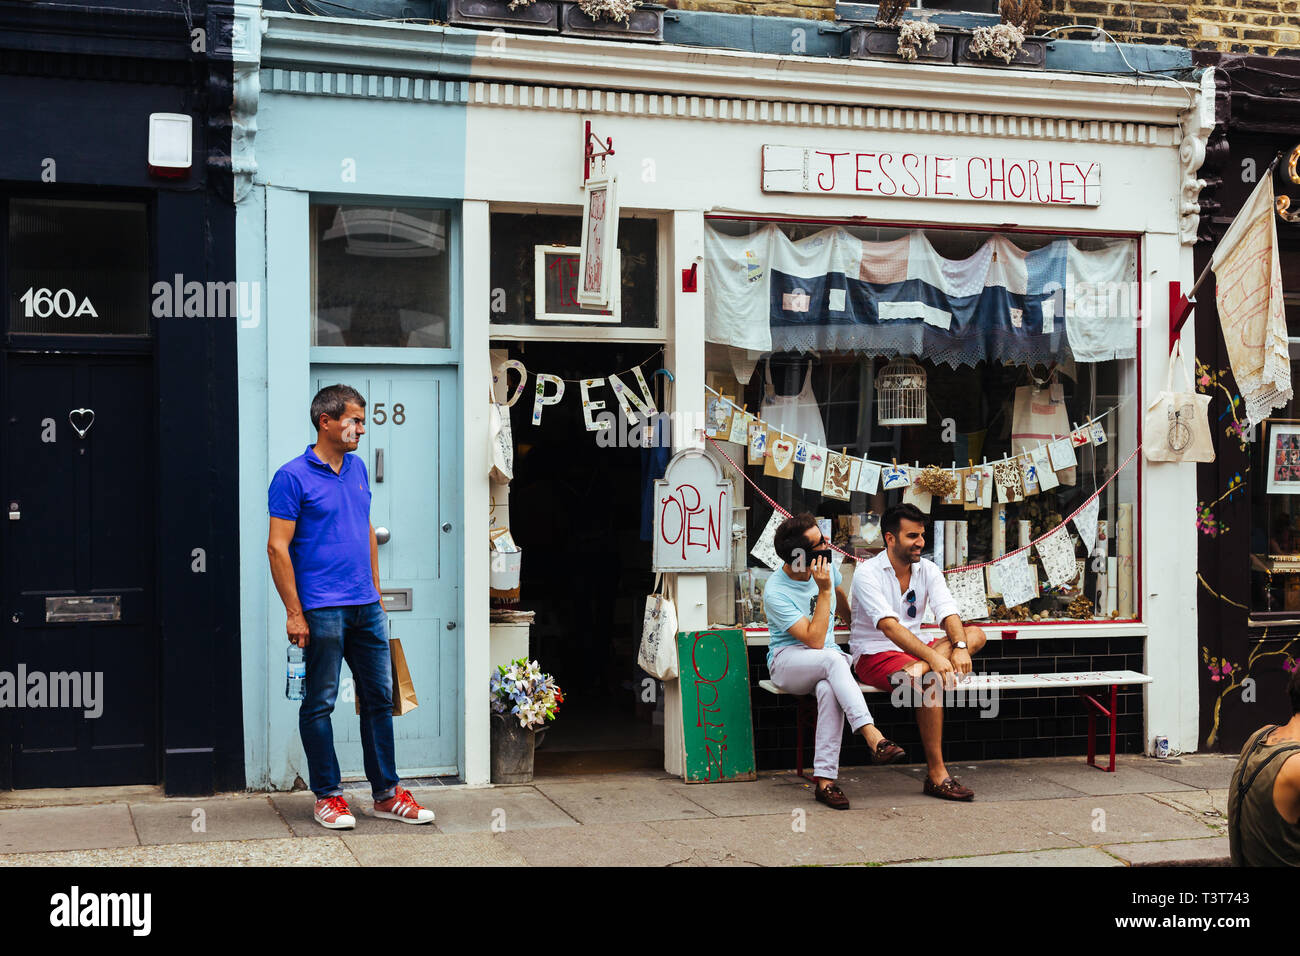 Londres, Reino Unido - 22 de julio de 2018: gente sentada fuera de la Jessie Chorley tienda de souvenirs donde la mano bordado apliques de collages y ventas, East Londo Foto de stock